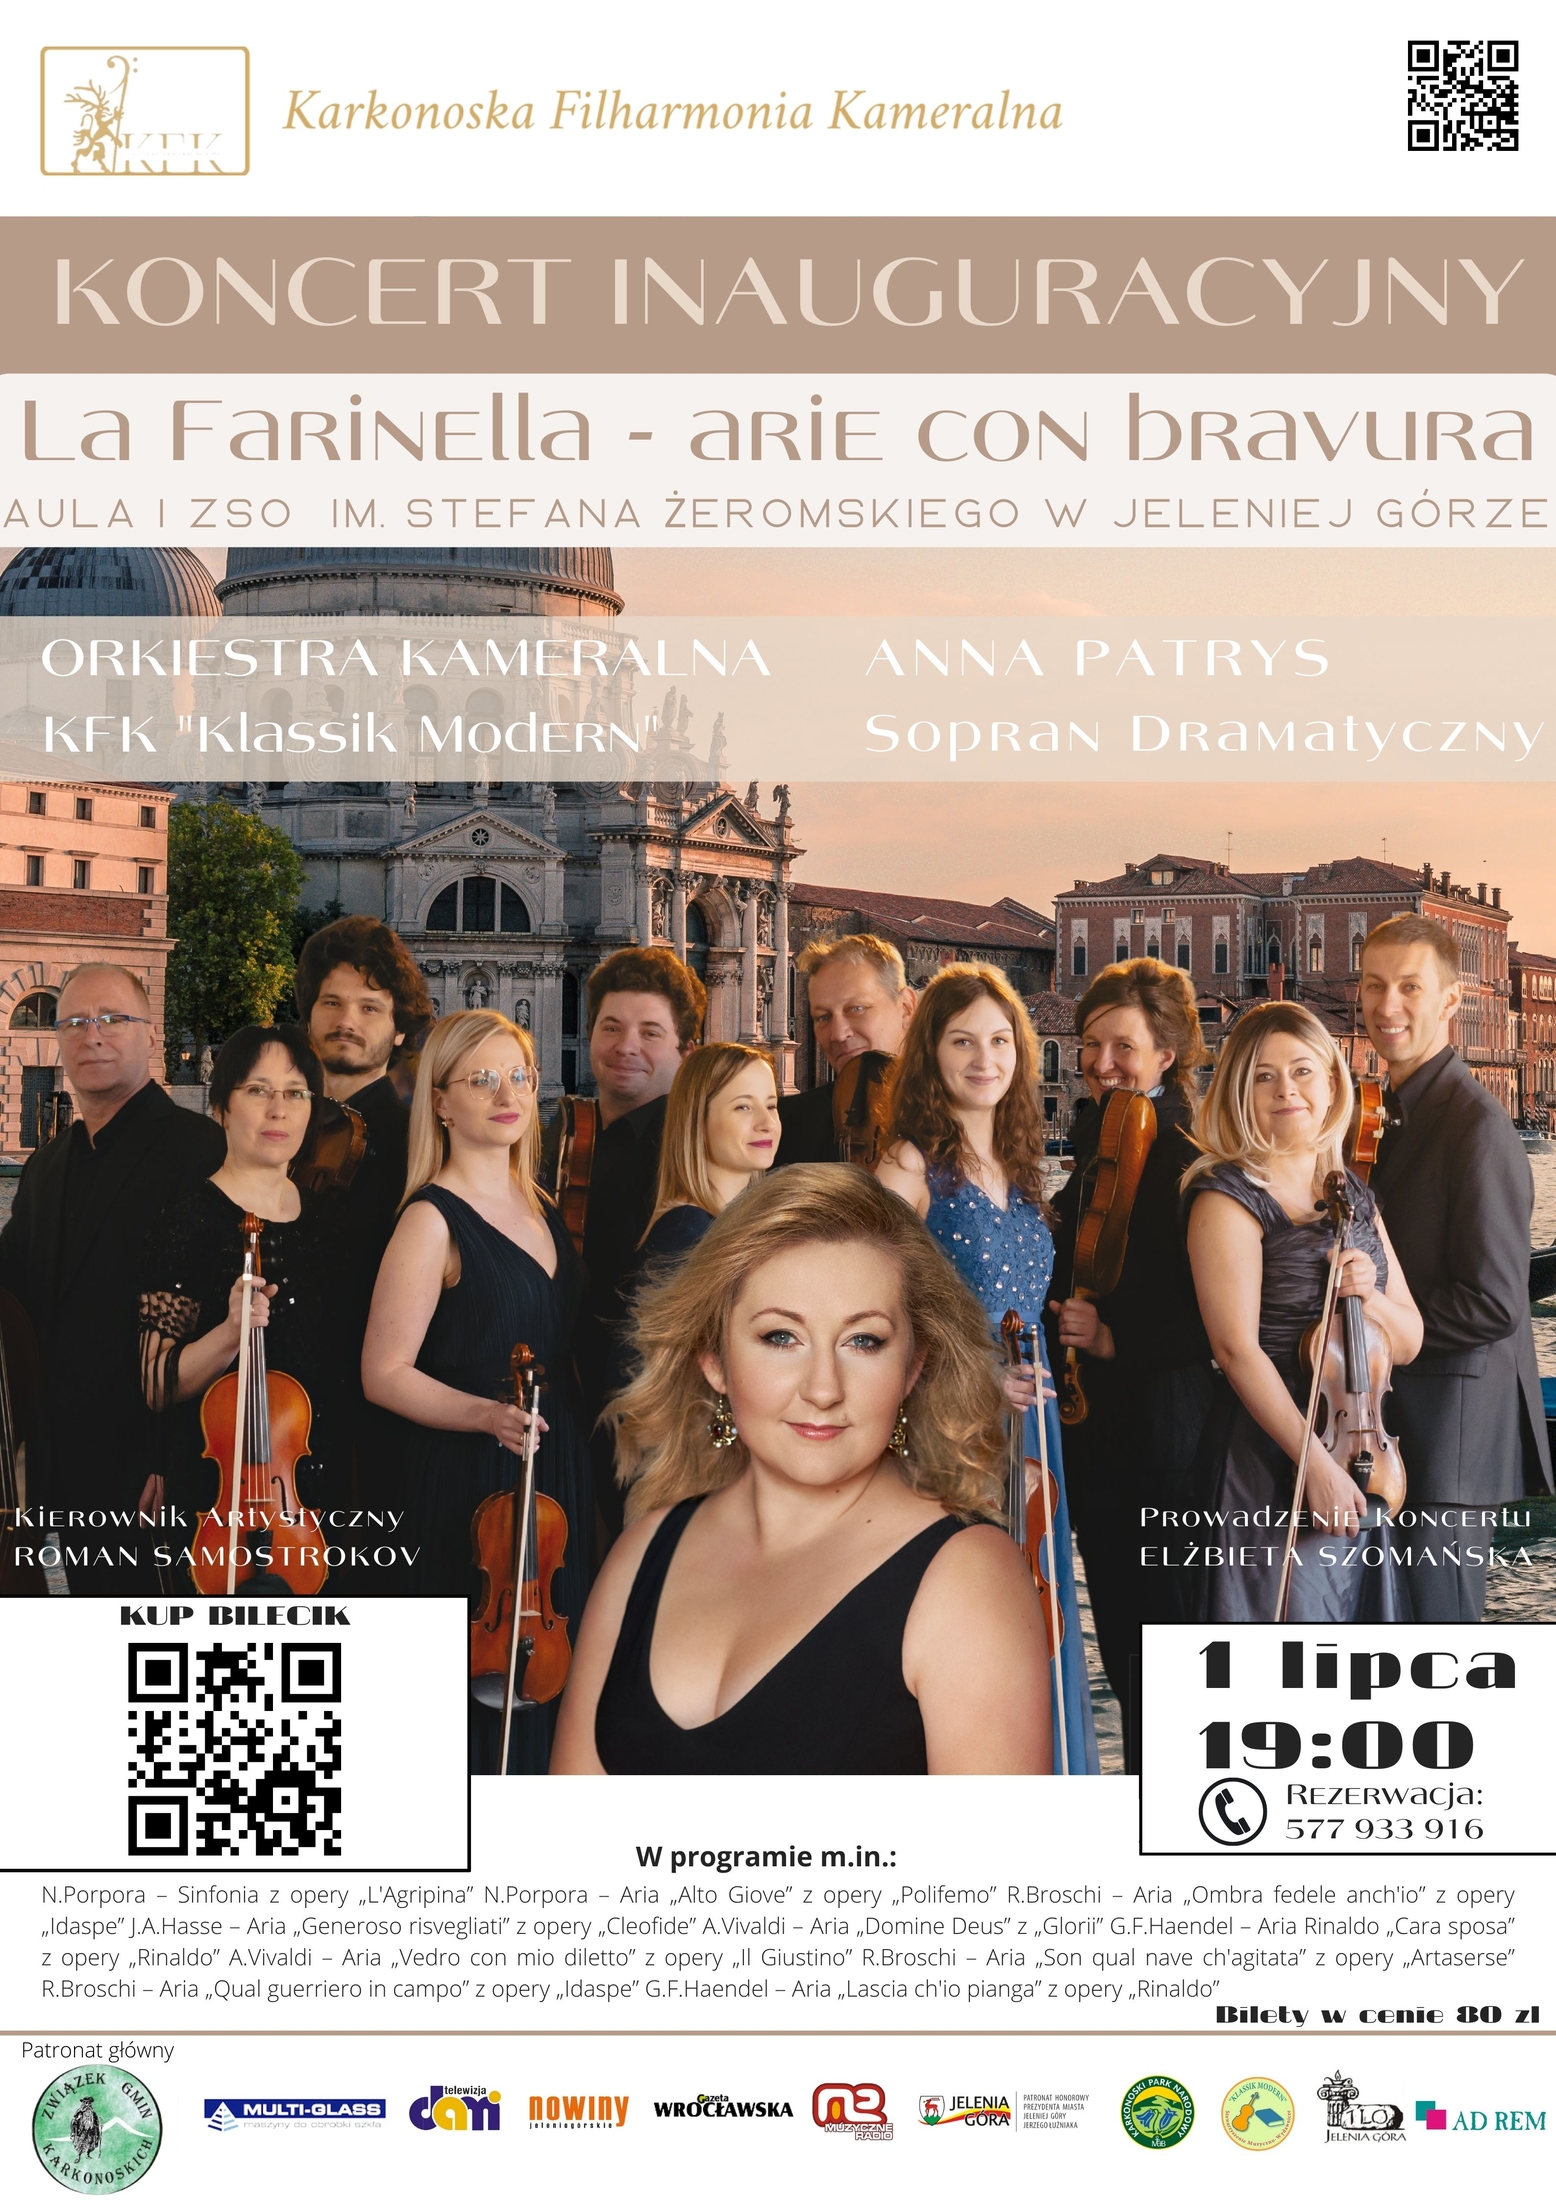 La Farinella - koncert arii operowych 1 lipca '22 w Jeleniej Górze